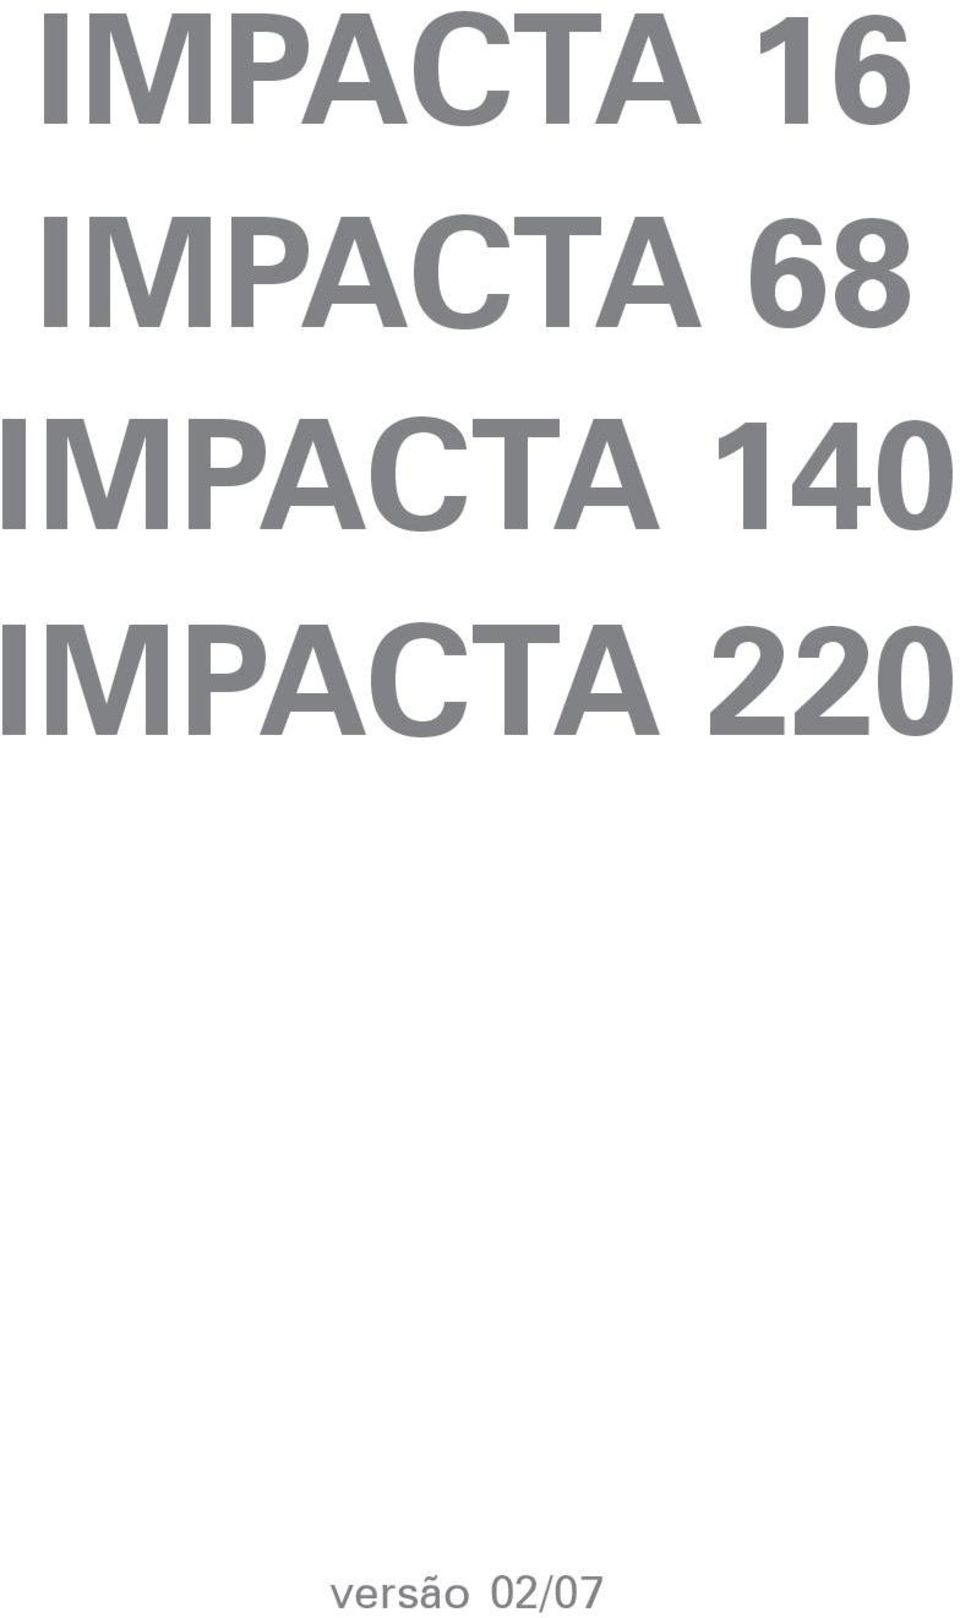 IMPACTA 140